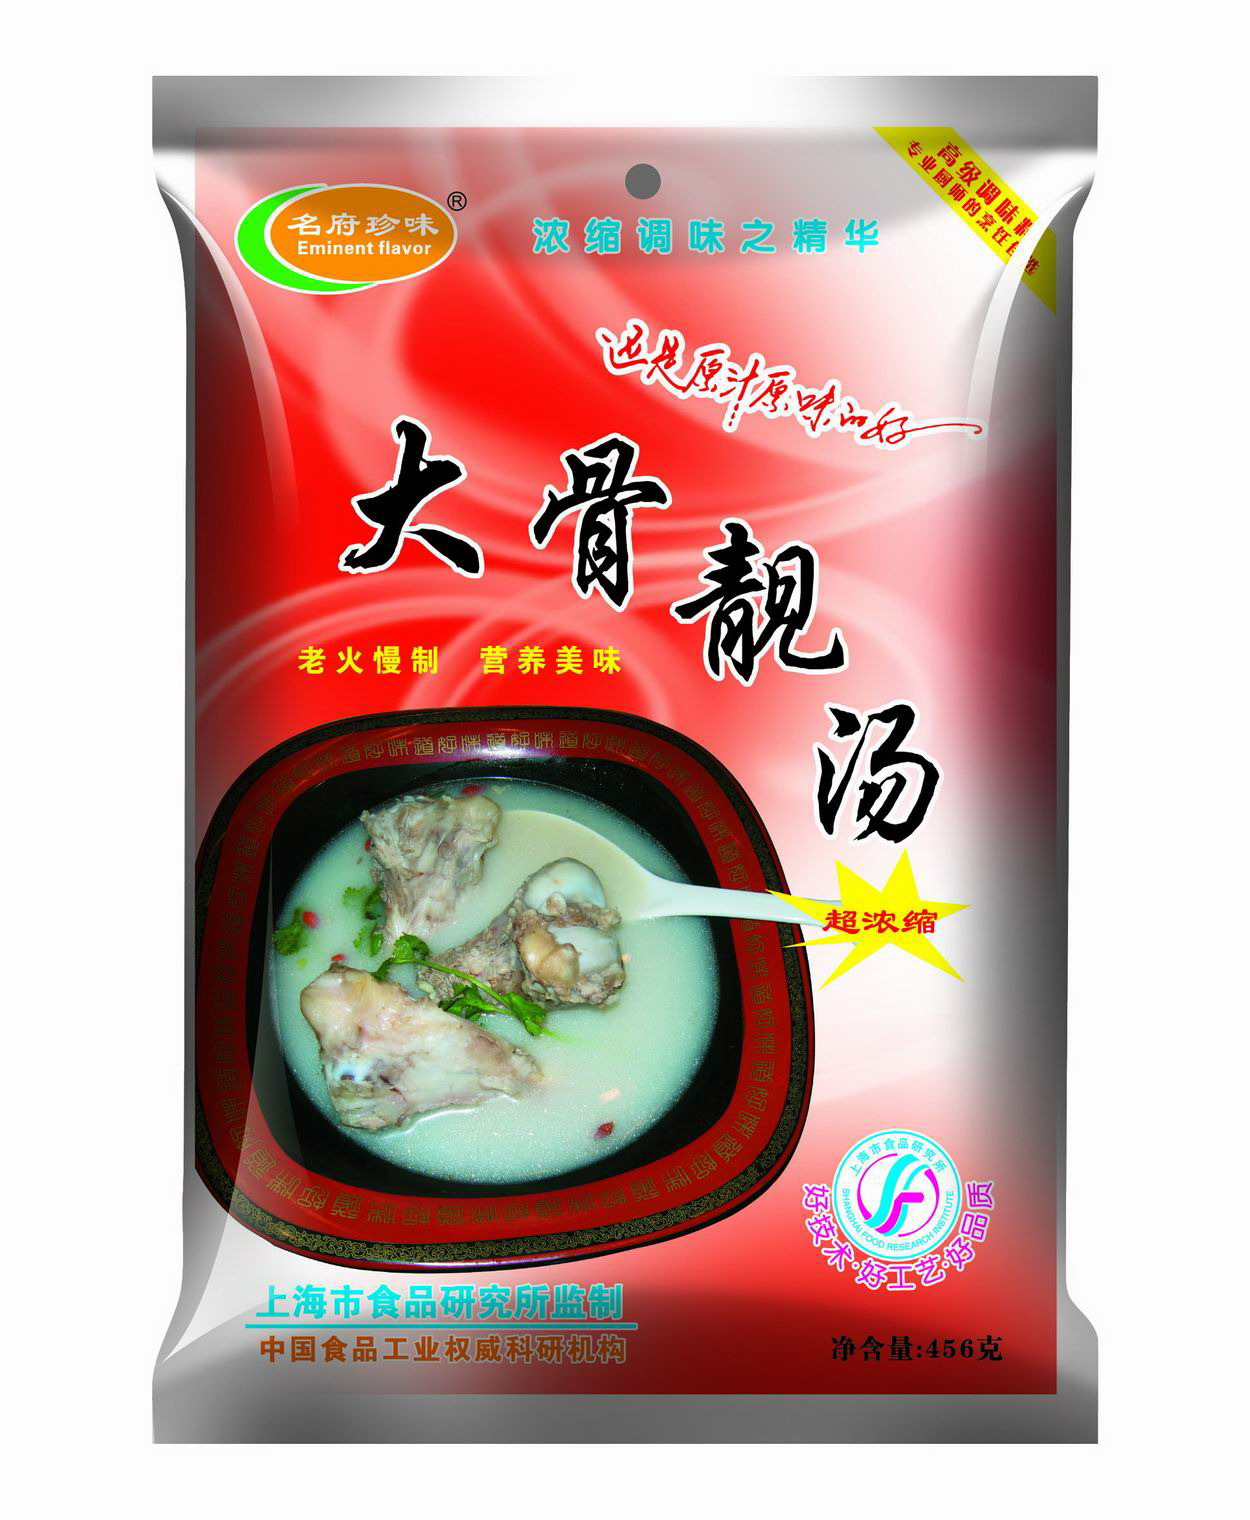 大骨靓汤复合调味料由上海市食品研究索技术开发研制,选用新鲜大